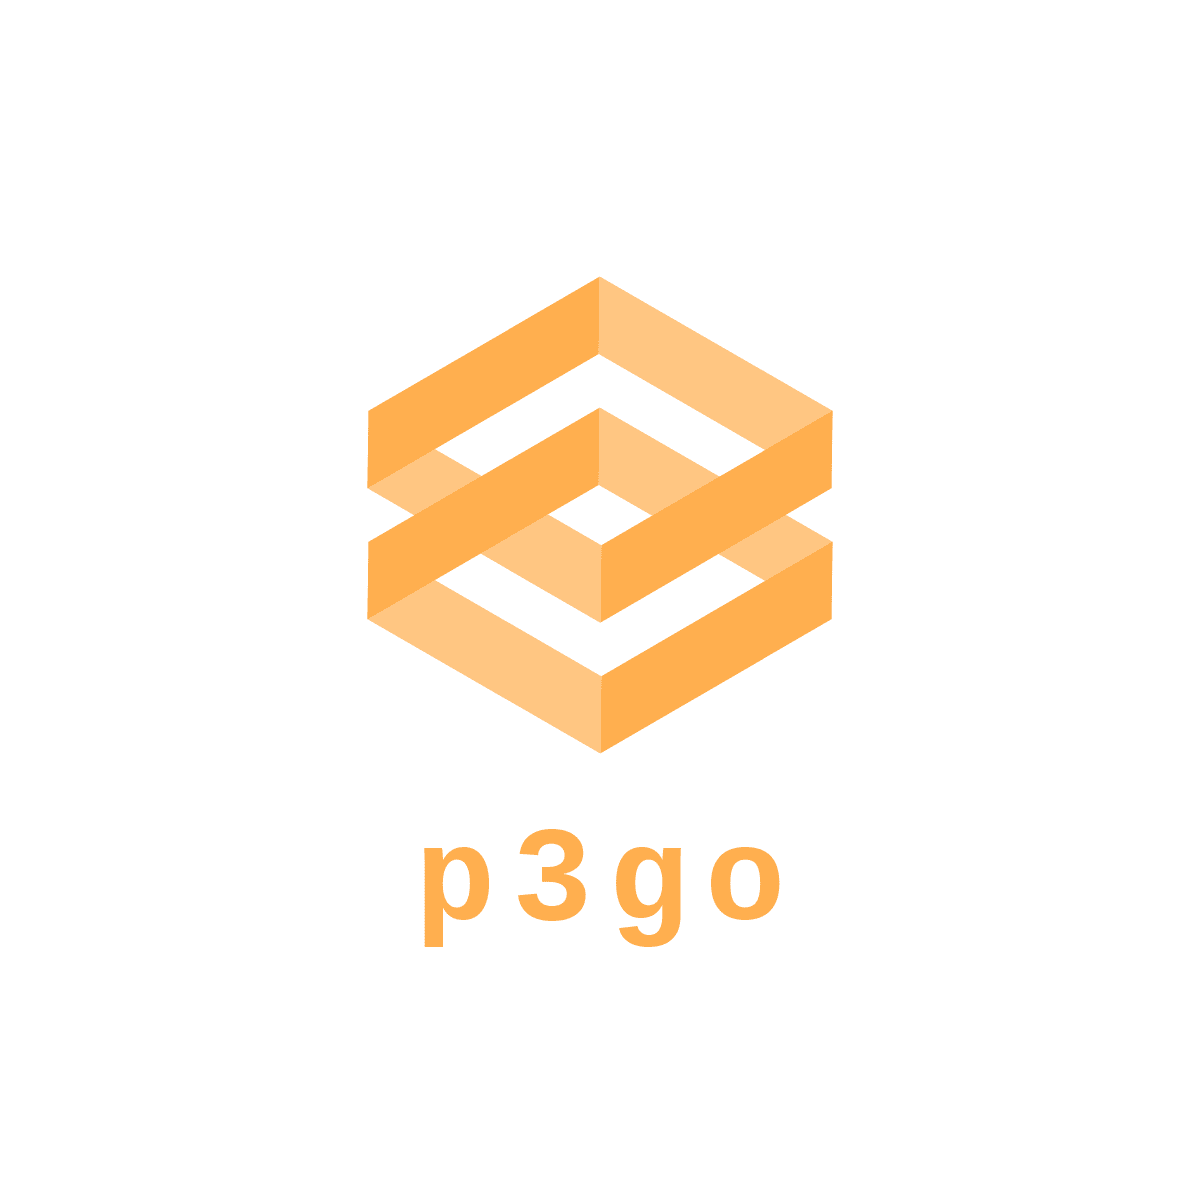 p3go logo